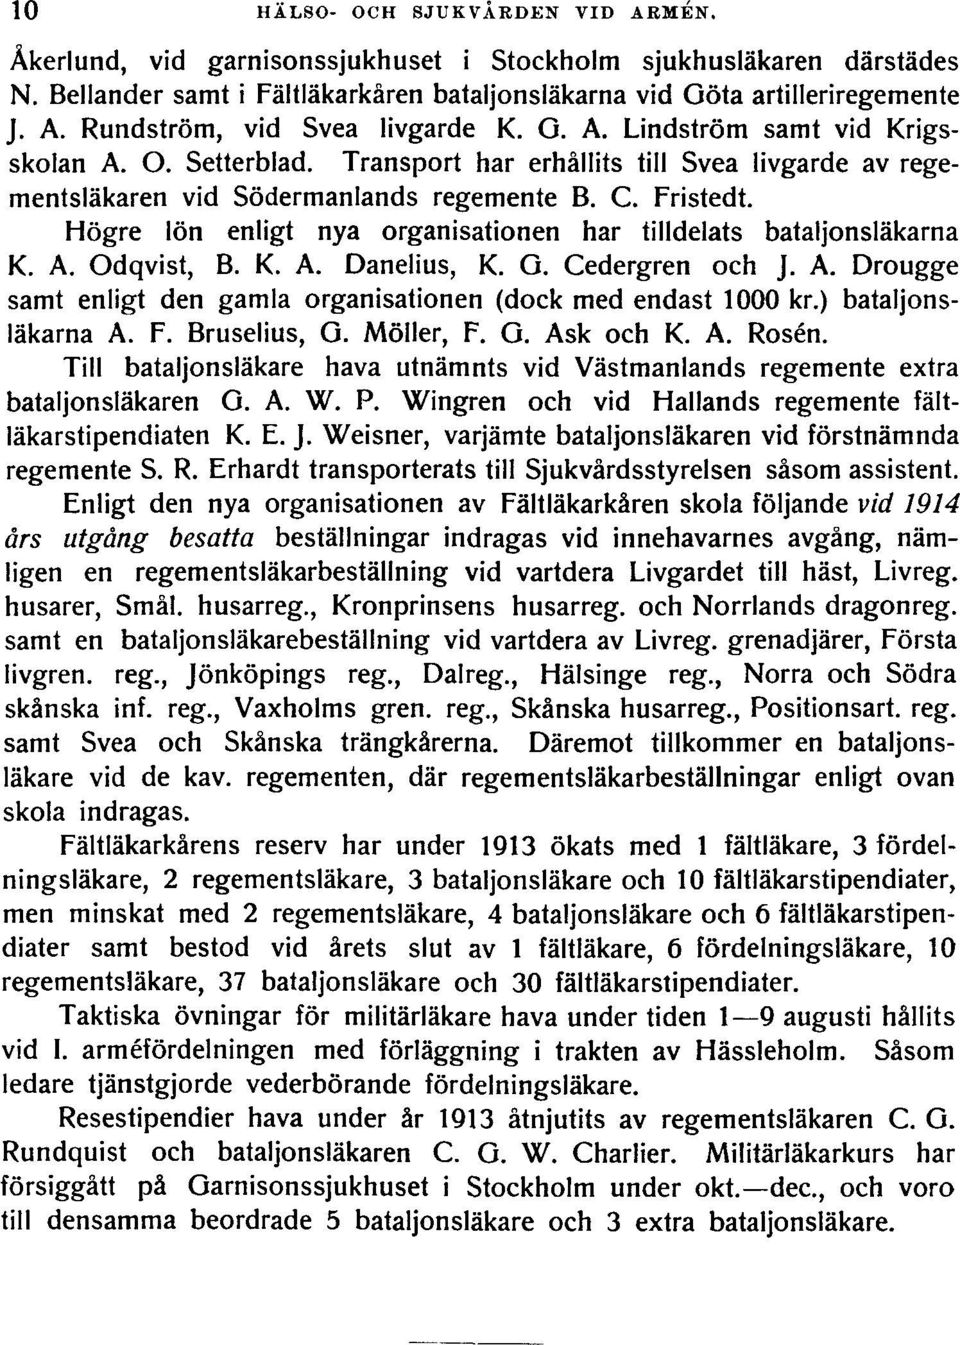 Högre lön enligt nya organisationen har tilldelats bataljonsläkarna K. A. Odqvist, B. K. A. Danelius, K. G. Cedergren och J. A. Drougge samt enligt den gamla organisationen (dock med endast 1000 kr.